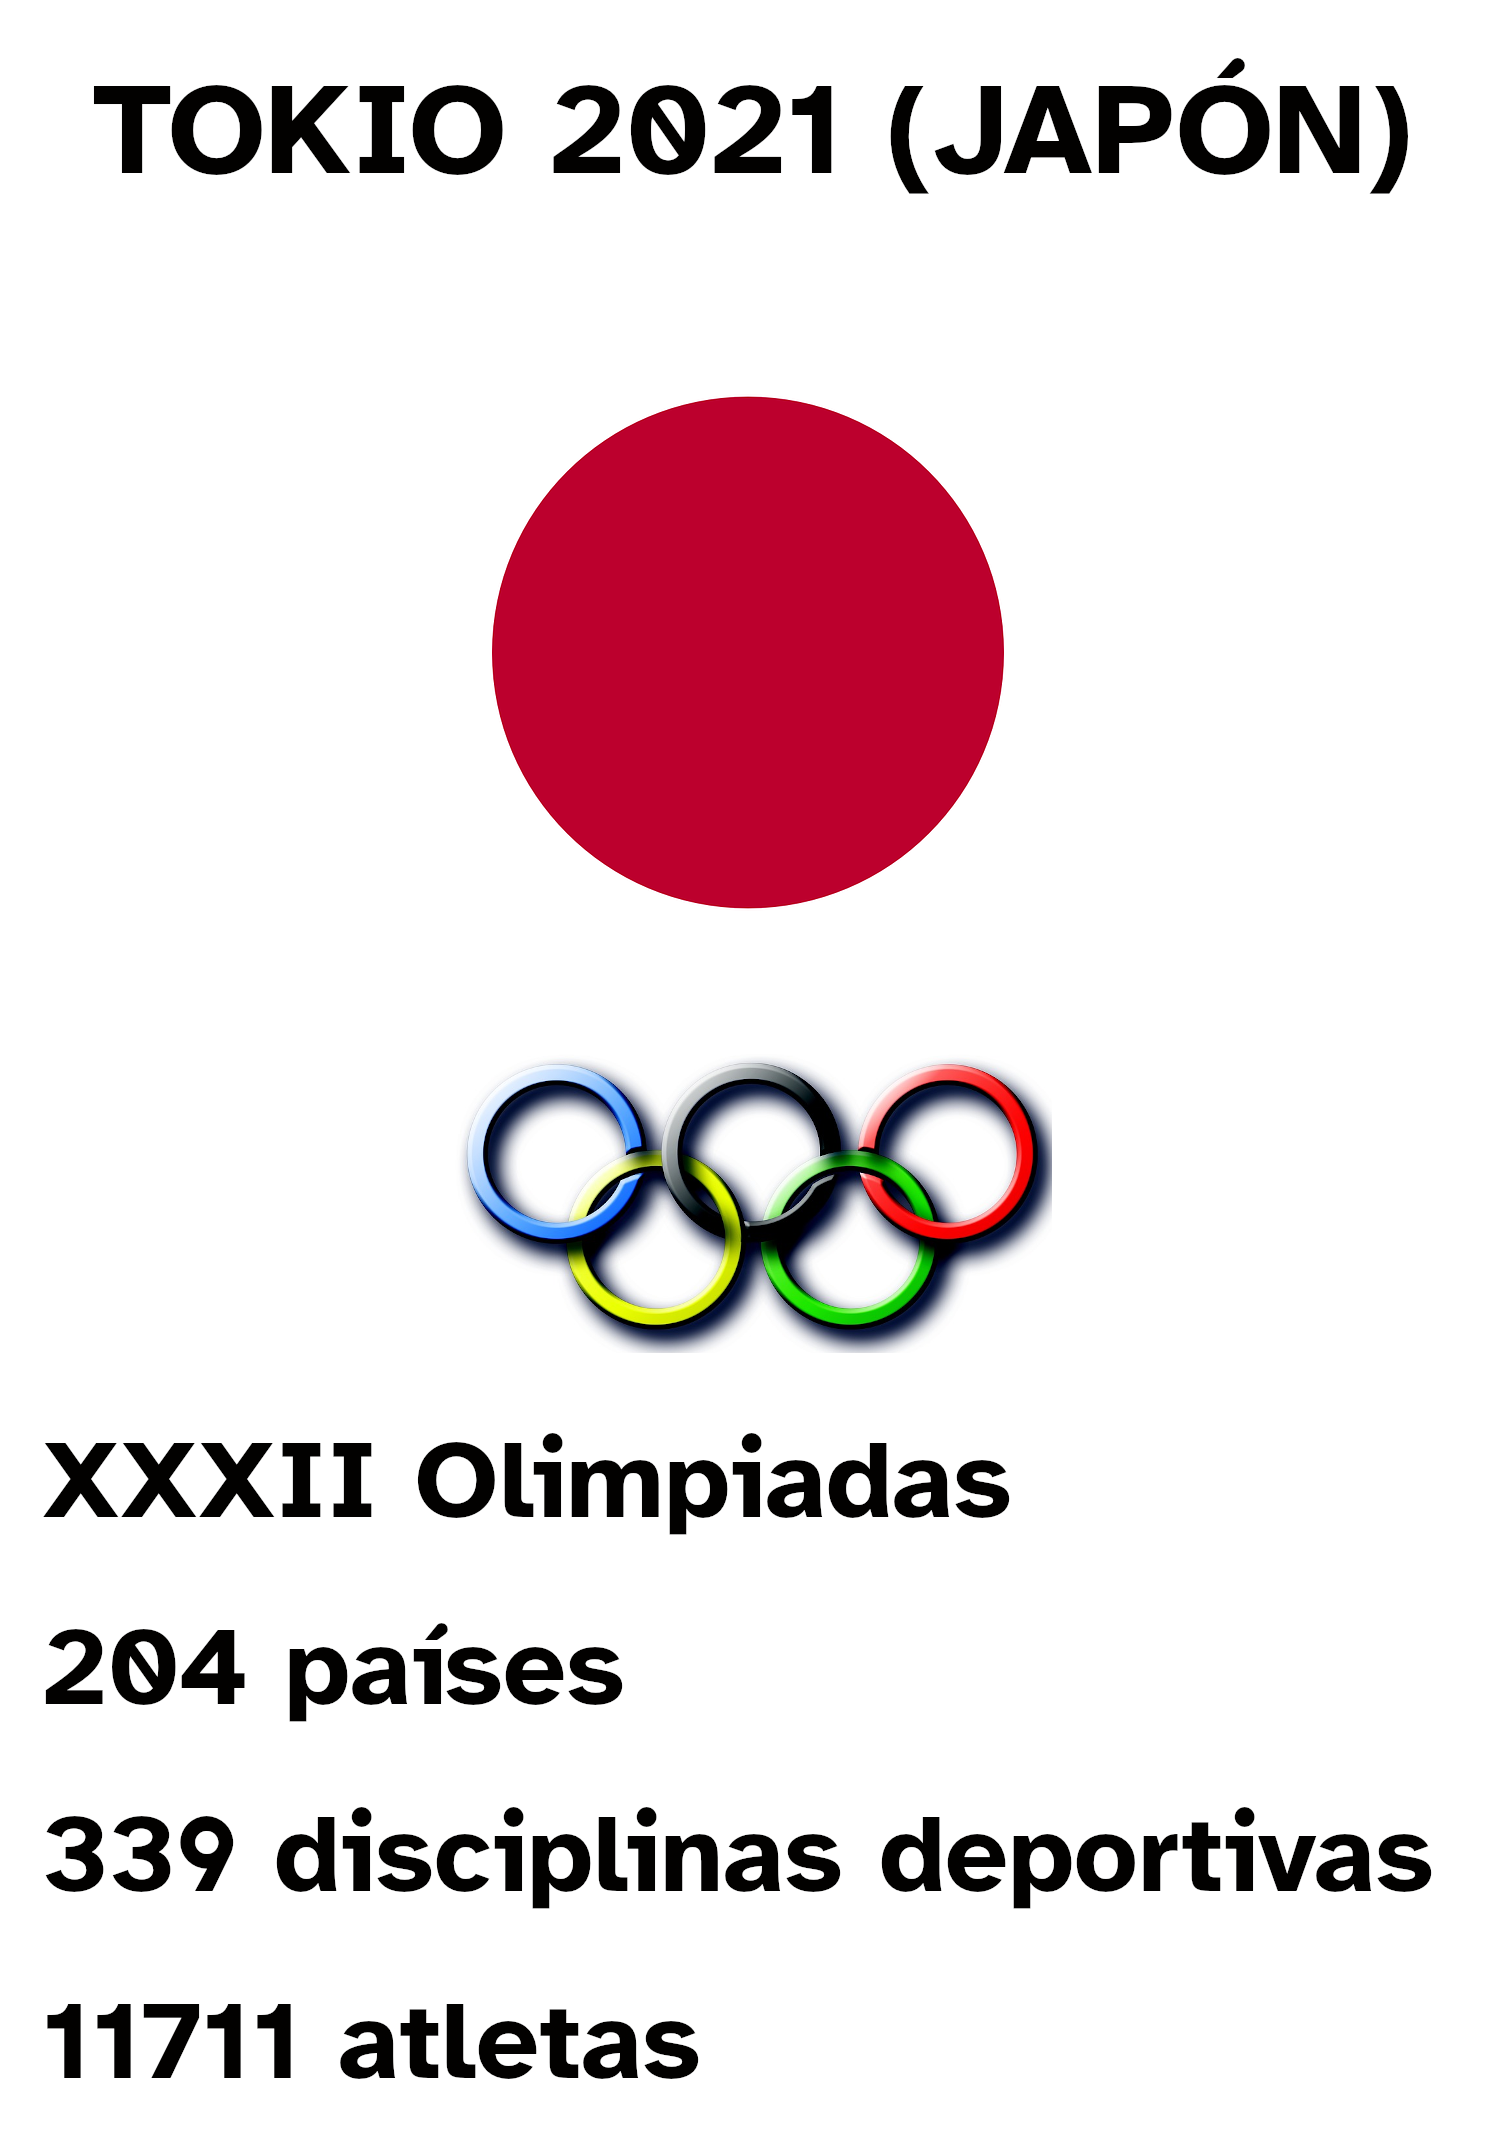 Cartel informativo olimpiadas Japón